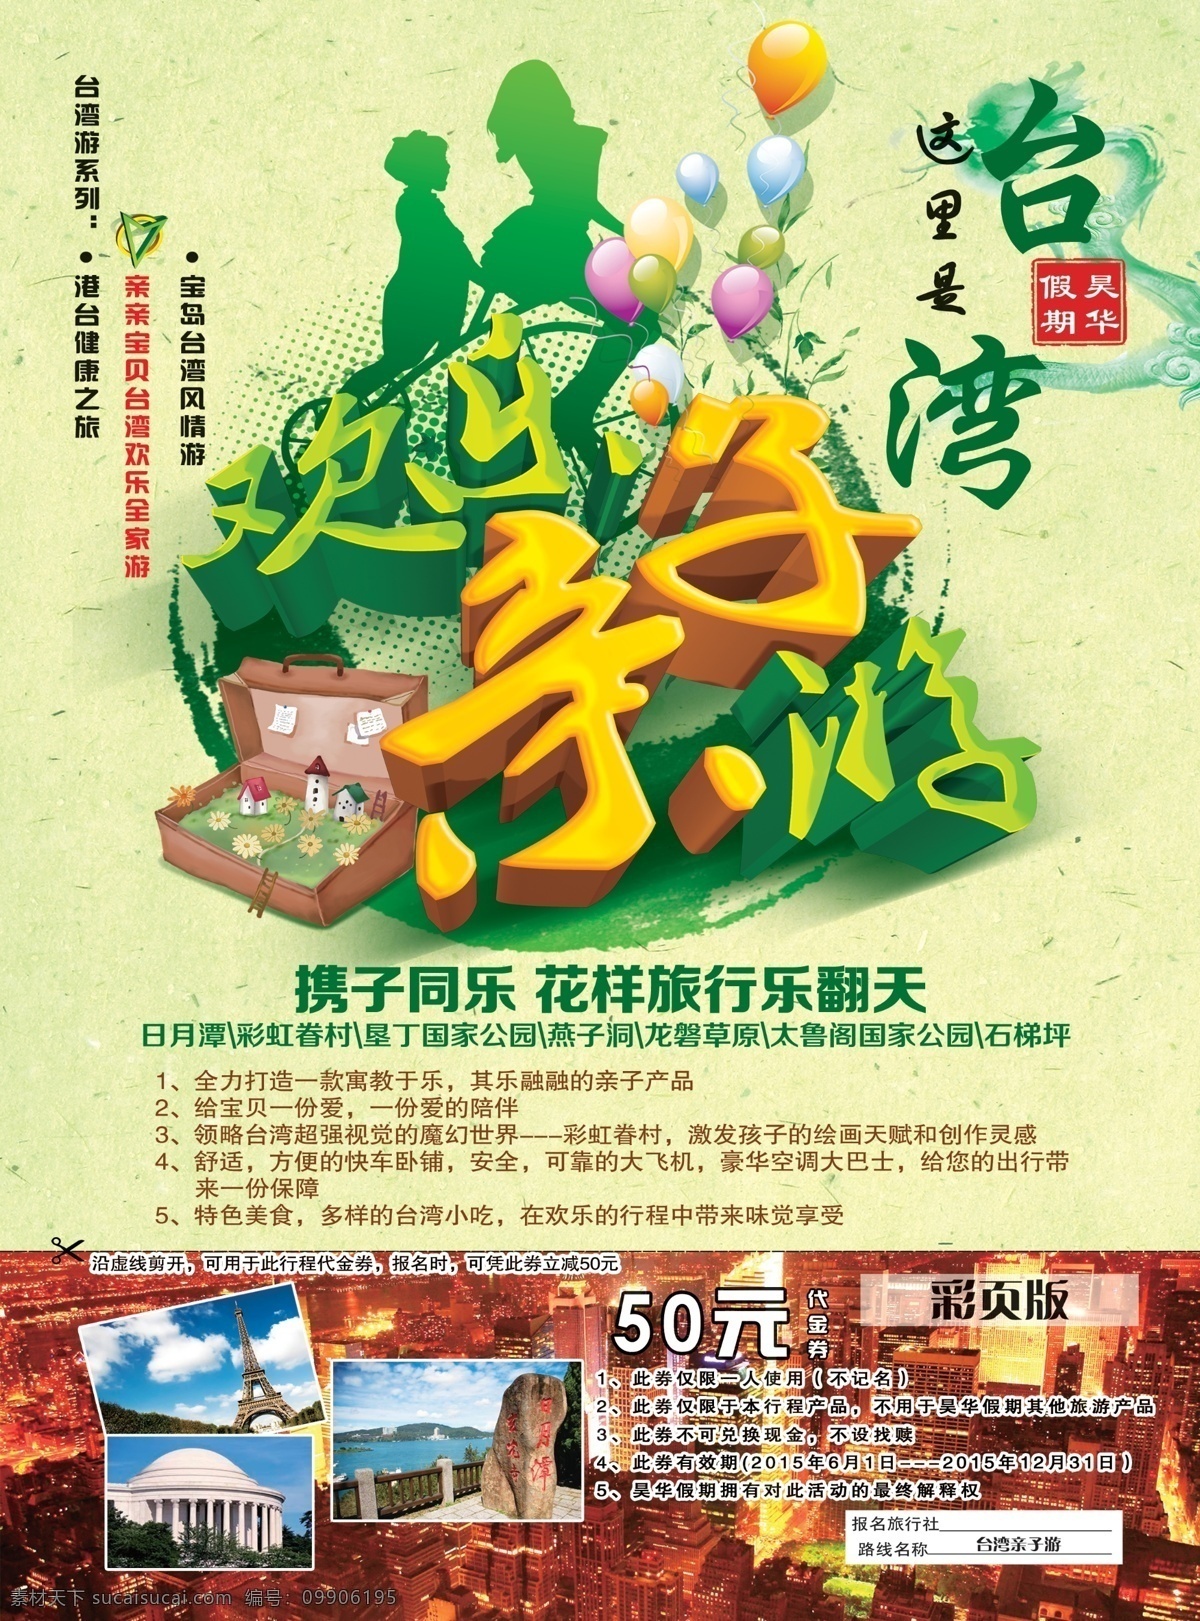 台湾 旅游 海报 旅游海报 亲子游海报 台湾旅游海报 原创设计 原创海报